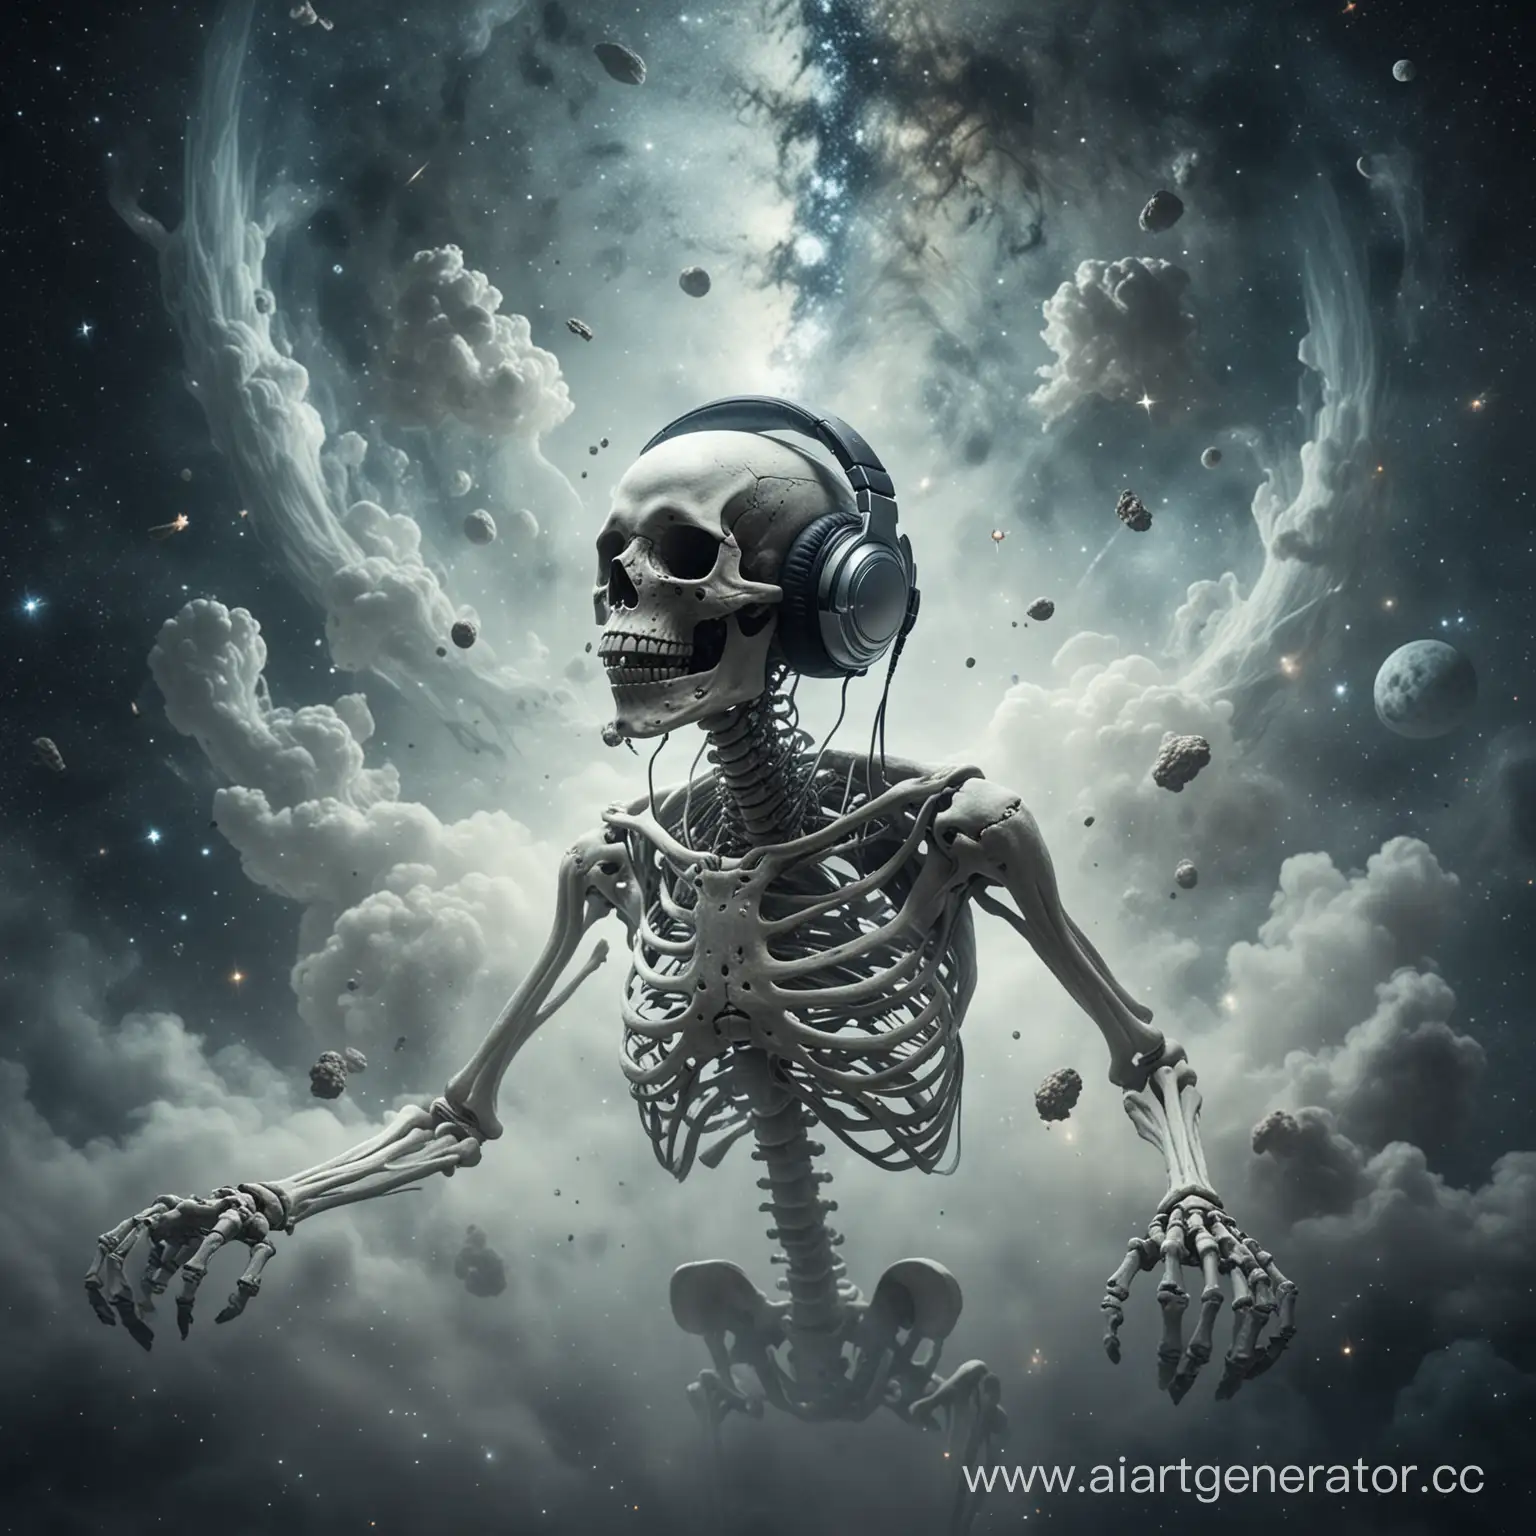 skeleton wearing headphones flying in space, fog, dreamy